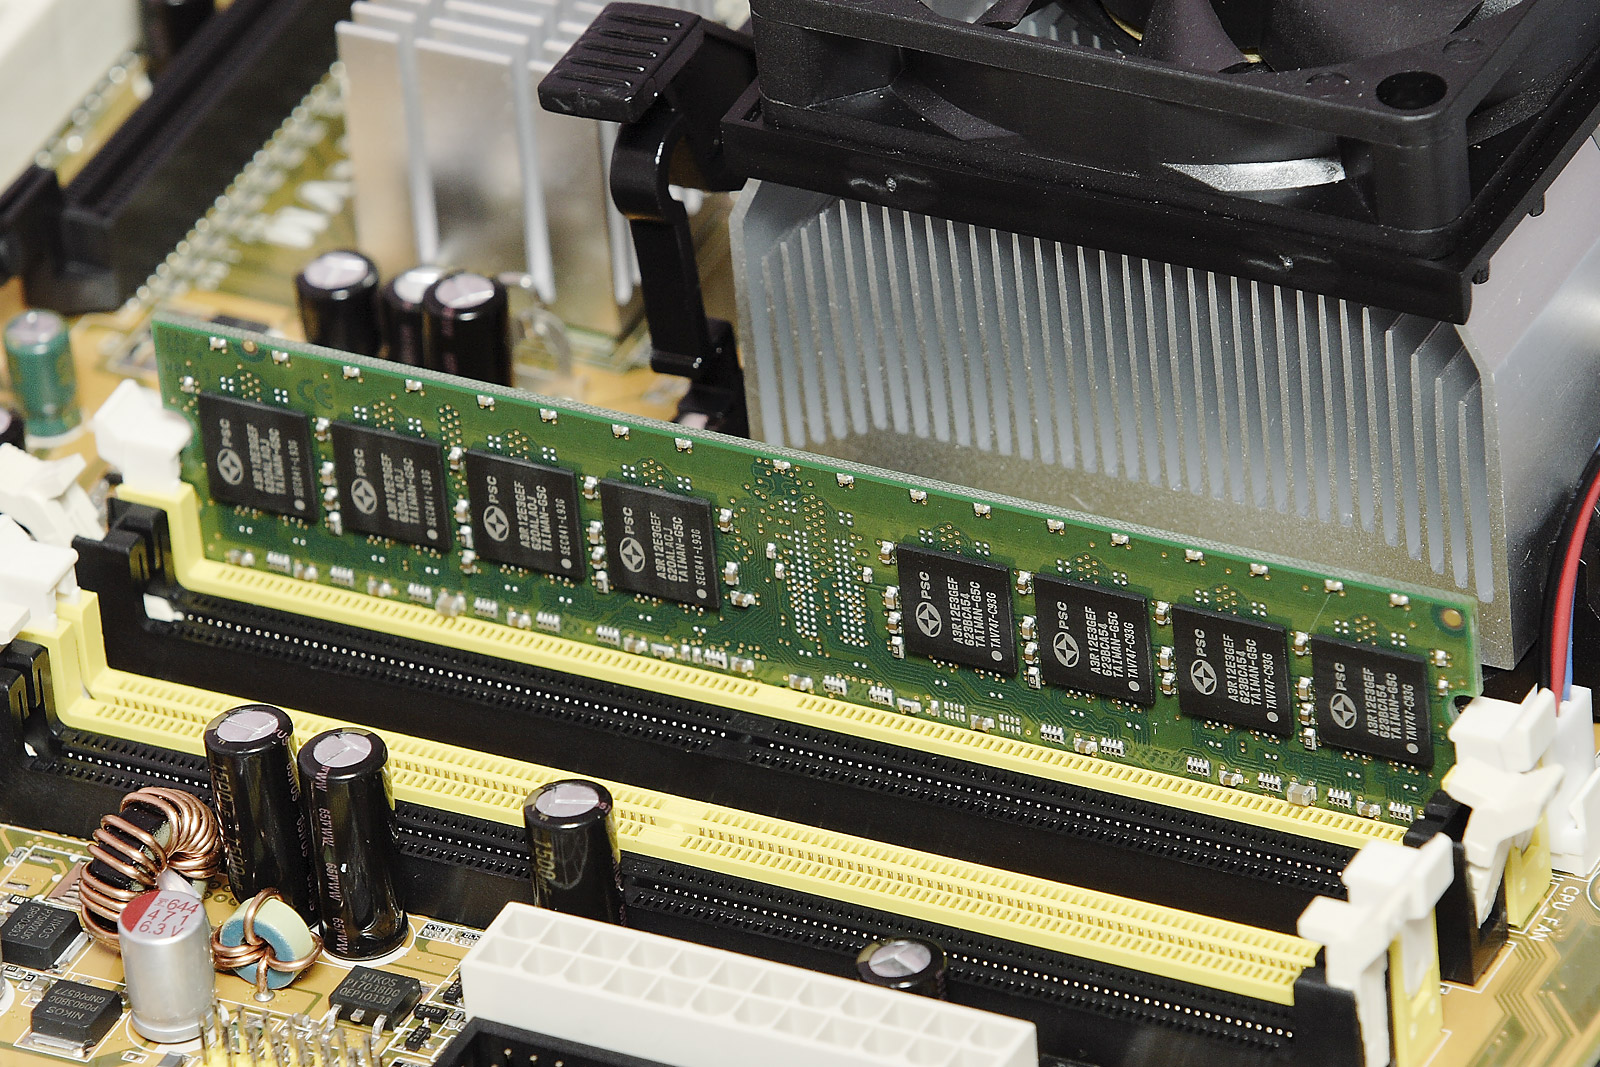 Motherboard Memory PC133 - ECC OFFTEK 512MB Replacement RAM Memory for Gigabyte GA-7VX 